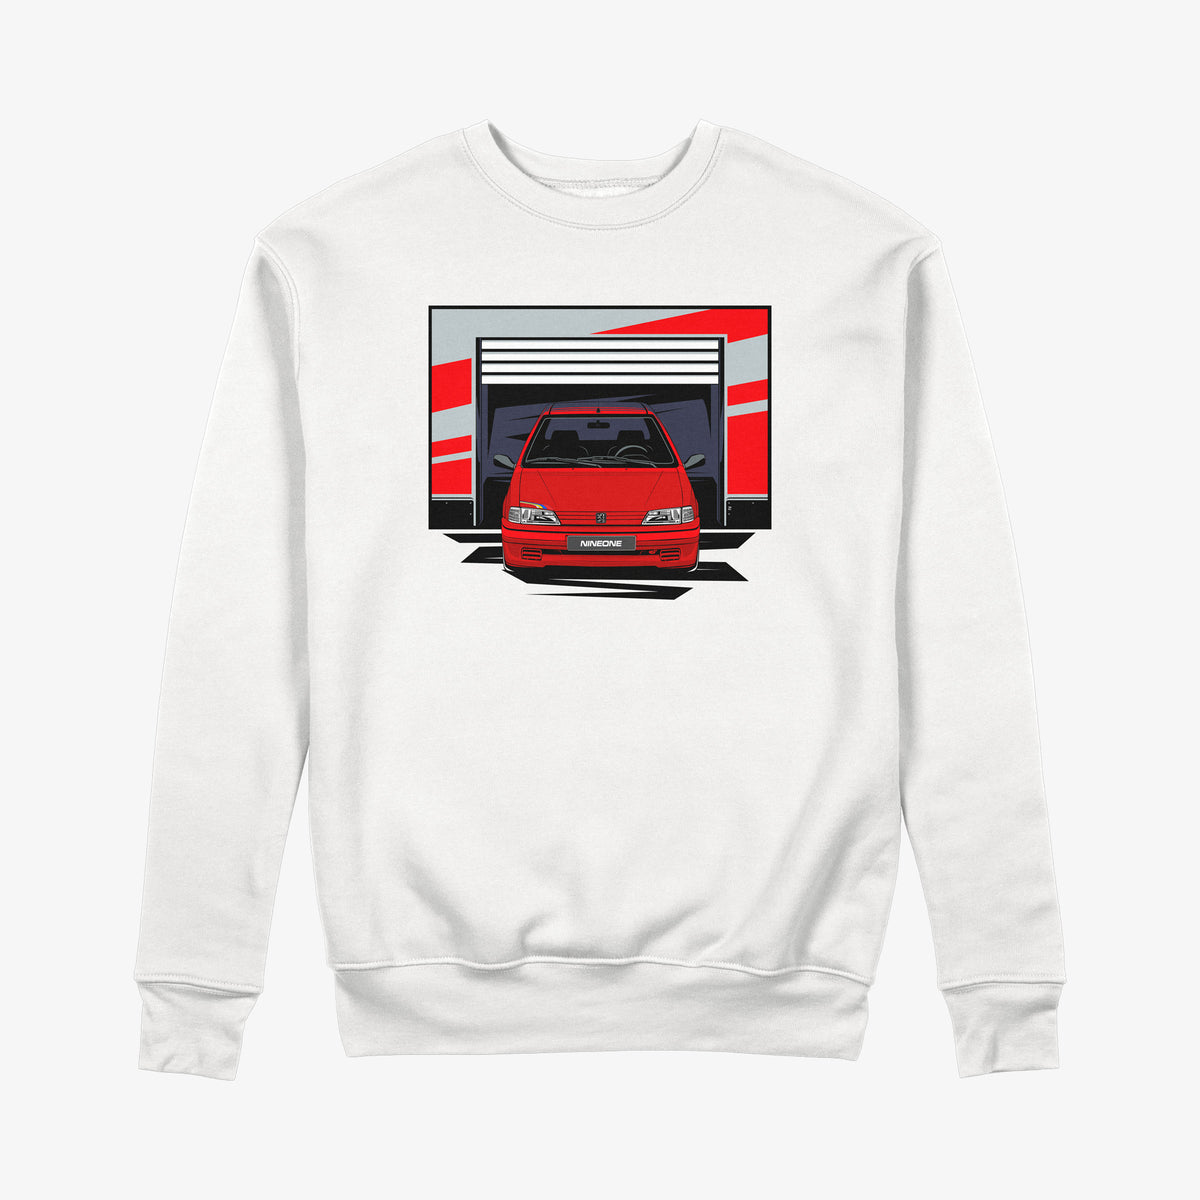 S1 Rallye Sweatshirt - nineone.